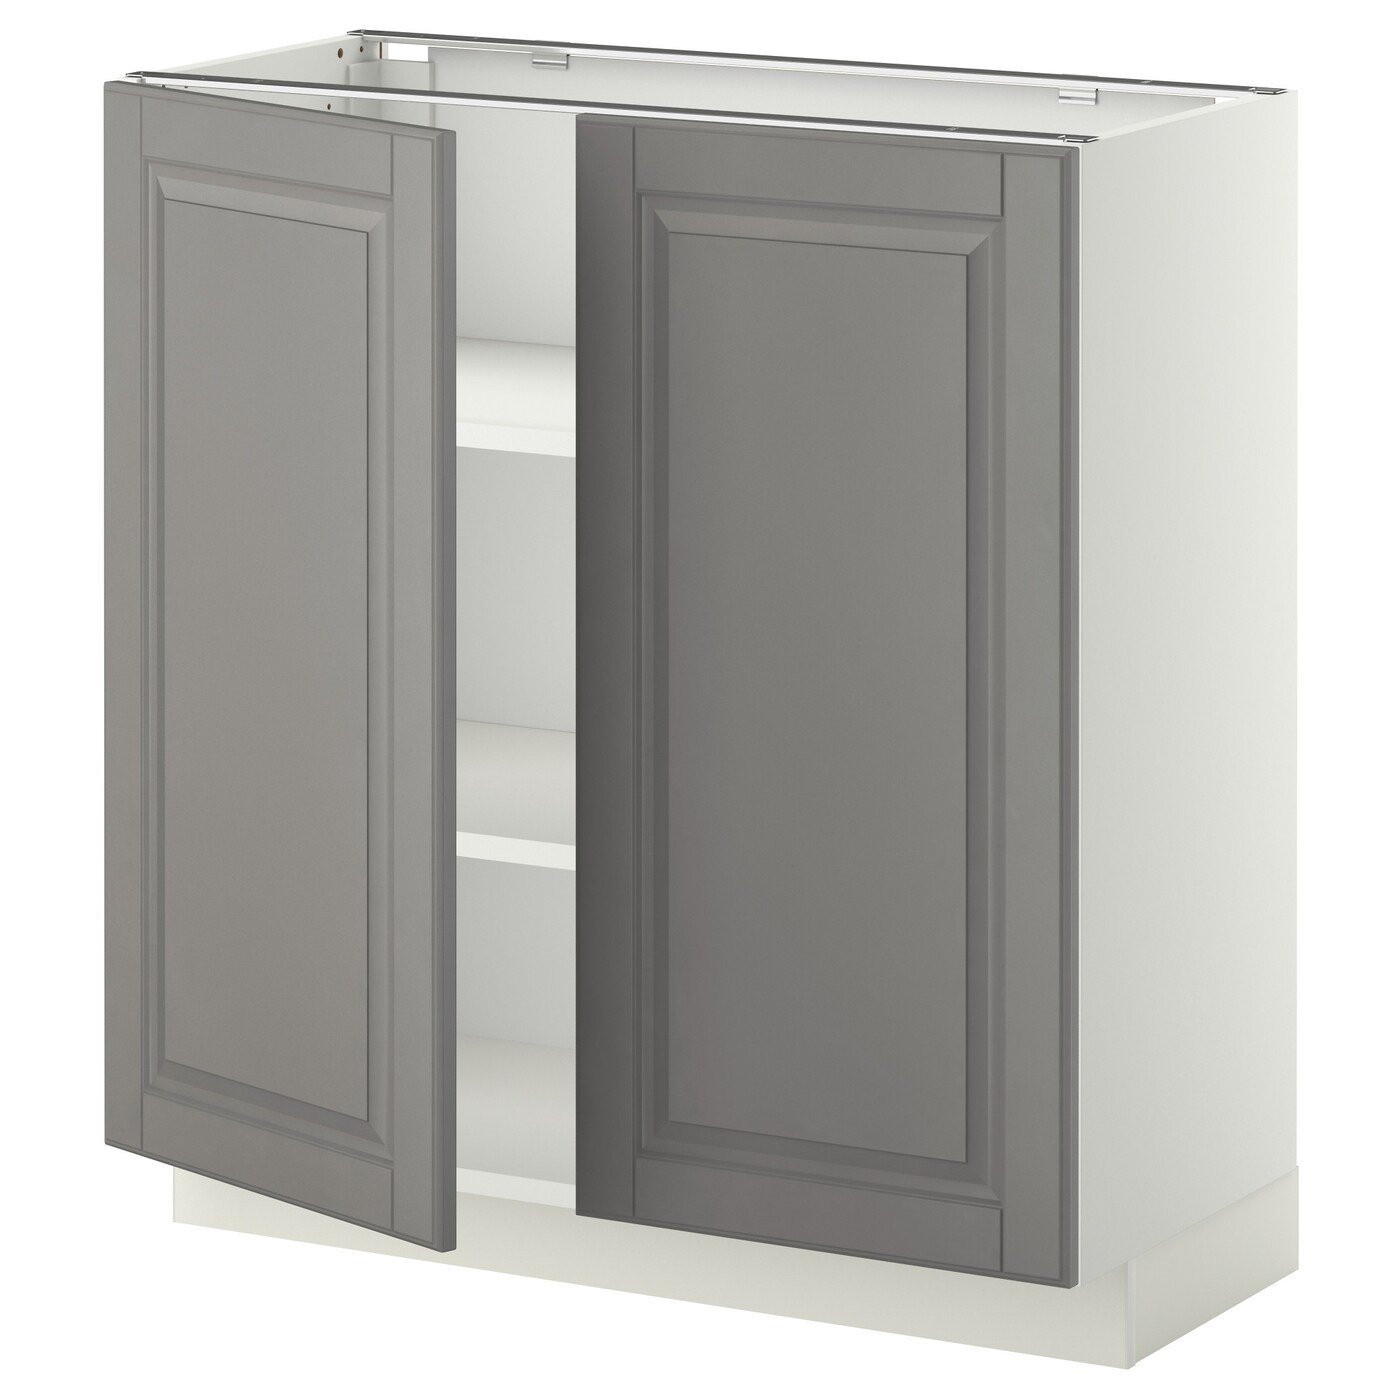 Напольный шкаф - IKEA METOD, 88x39,5x80см, белый/серый, МЕТОД ИКЕА